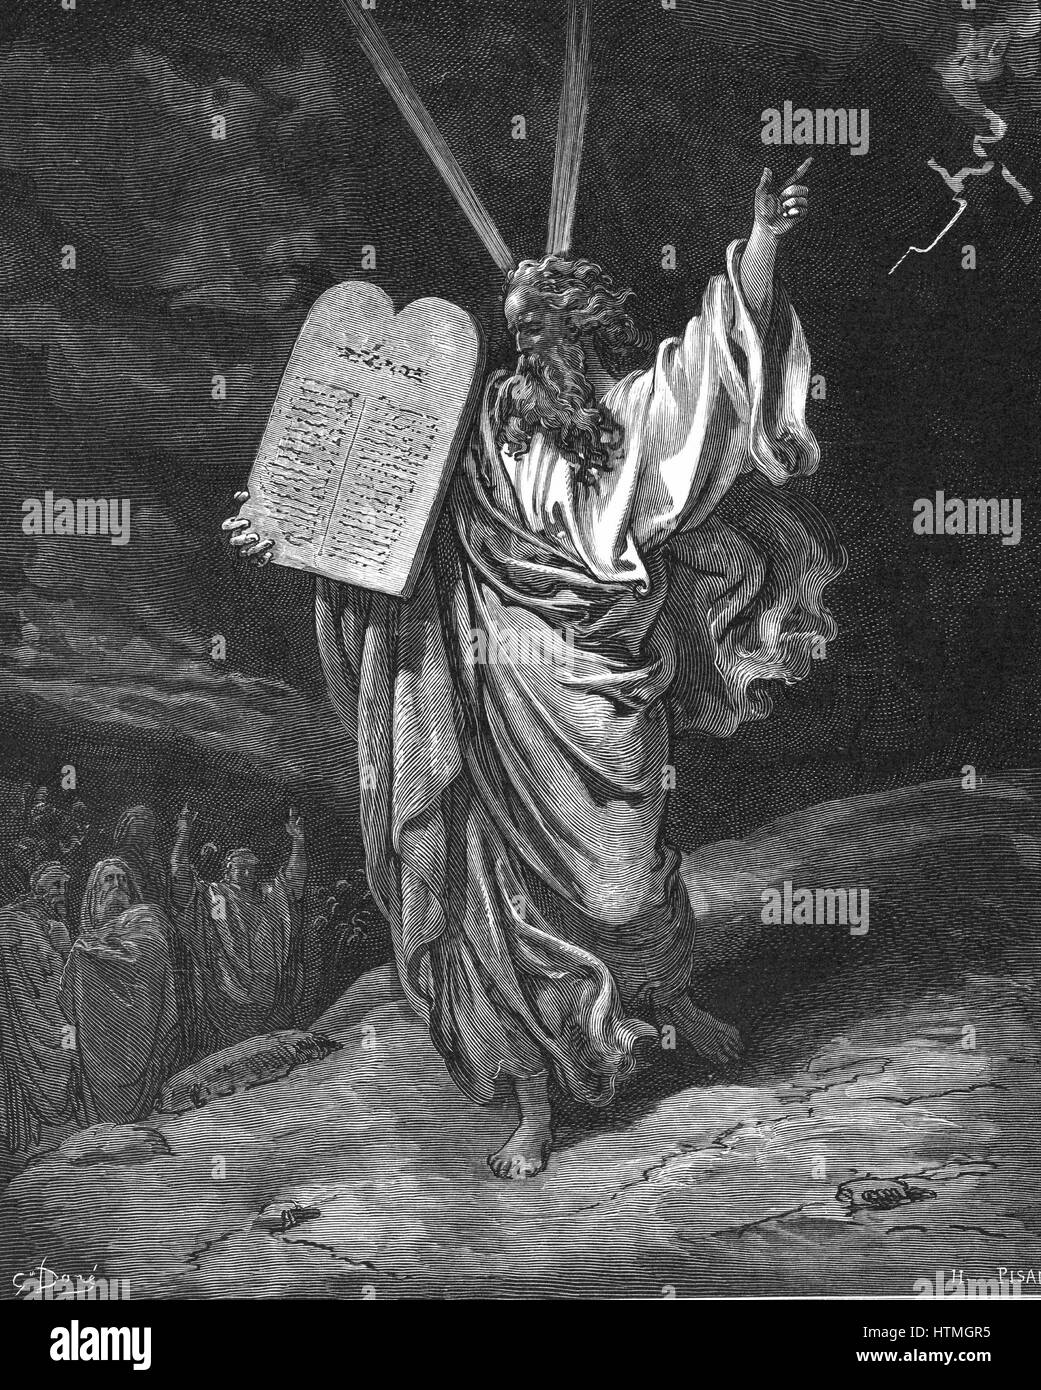 Moses vom Berg Sinai mit den Gesetzestafeln (zehn Gebote) absteigend. Exodus 5,35. Illustration von Gustave Dore (1832-1883) für "Die Bibel" (London 1866). Holzstich. Stockfoto